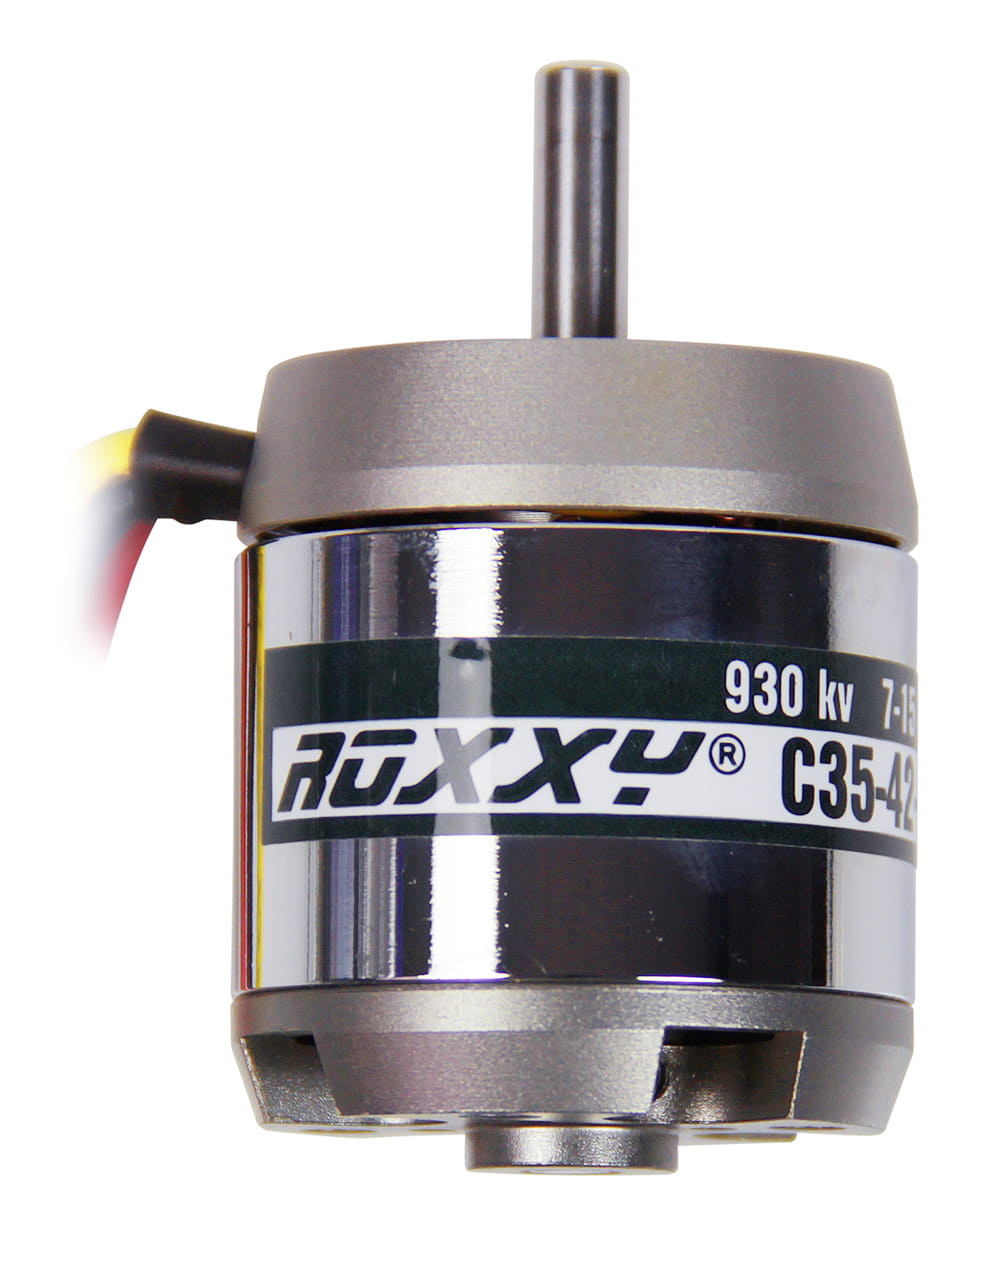 Multiplex ROXXY Brushless Motor BL Outrunner C35-42-930kV